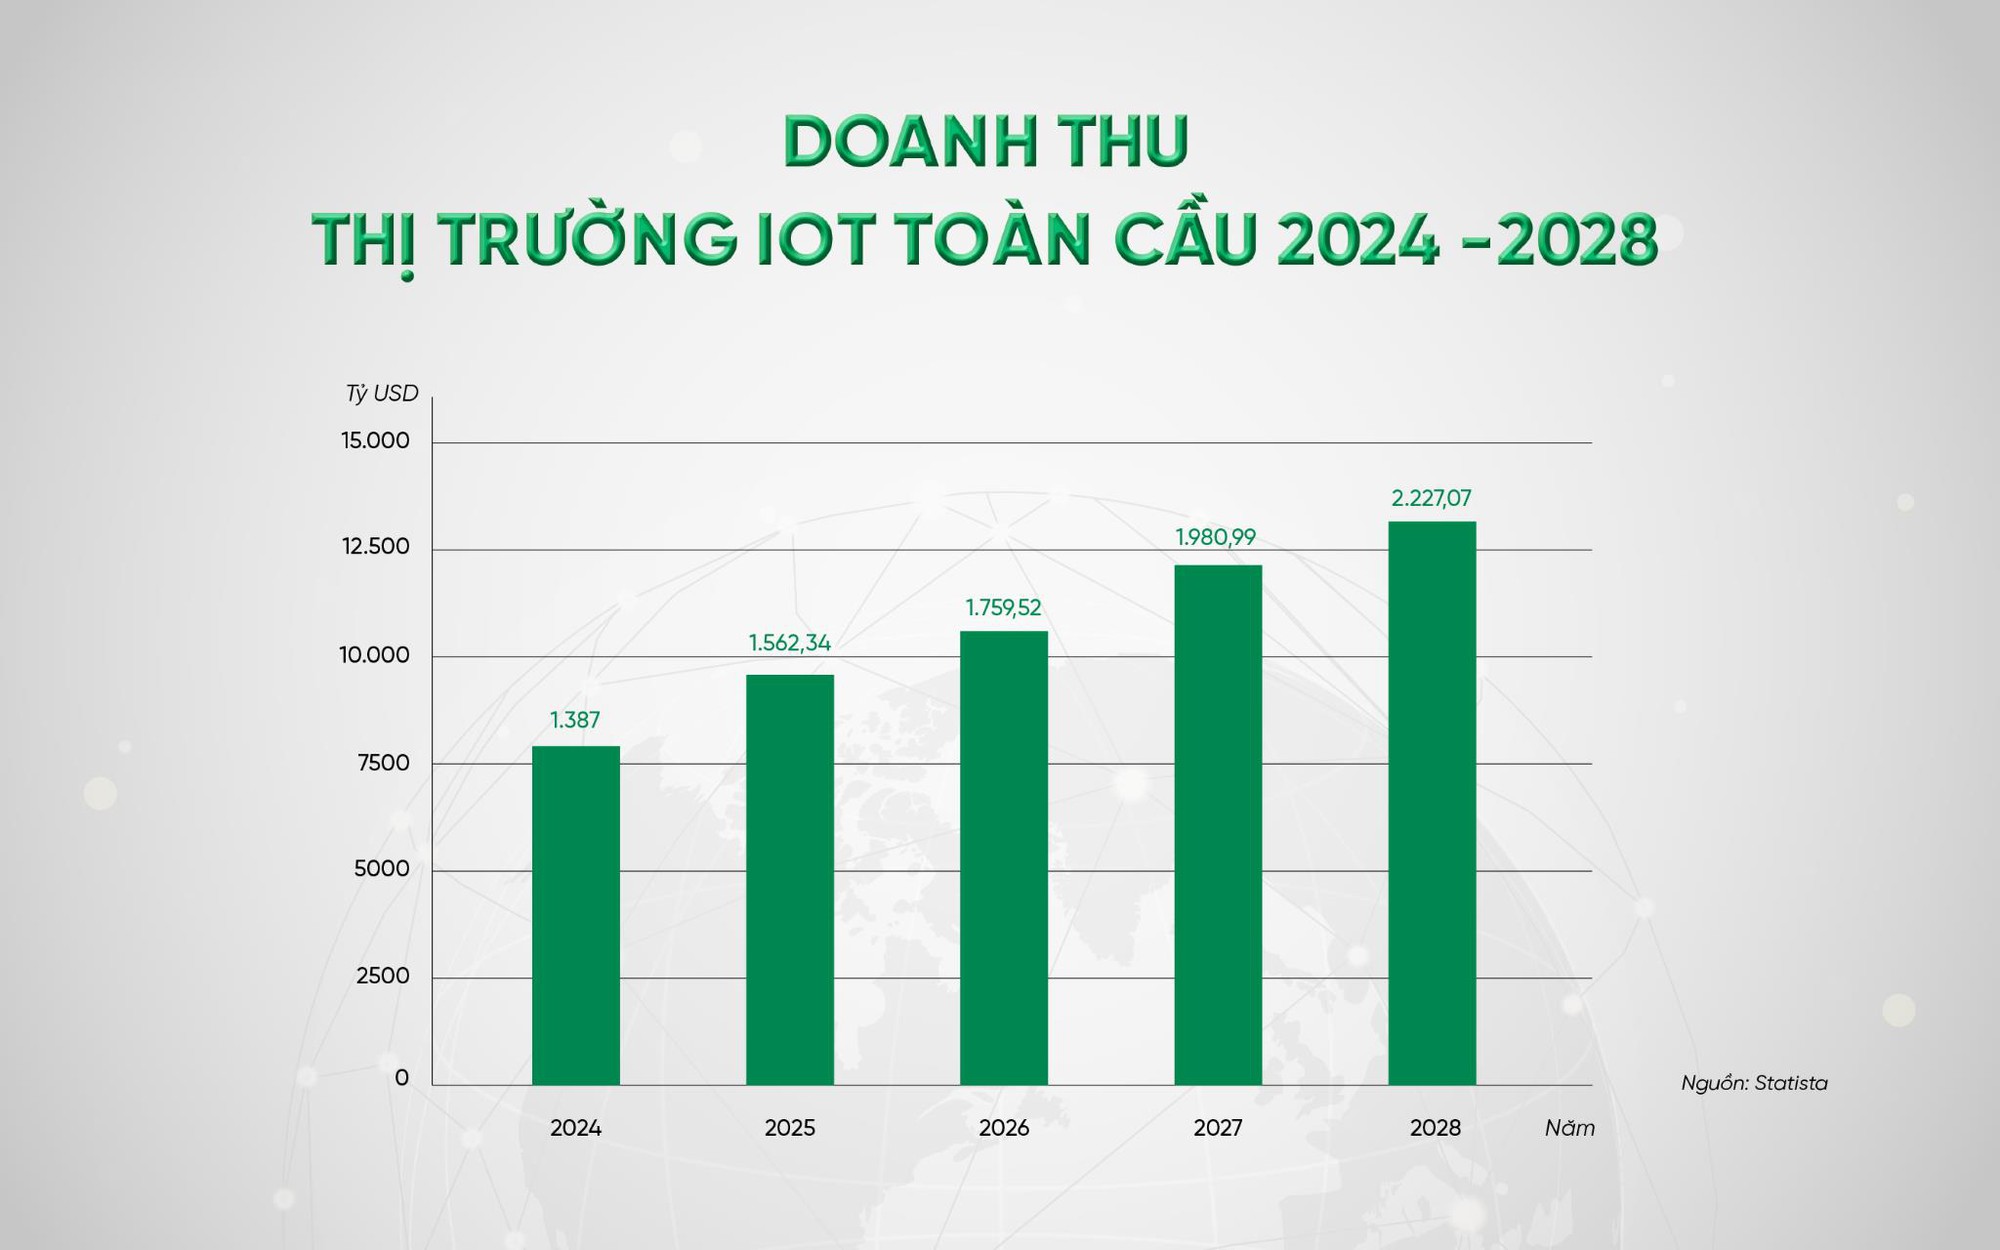 Việt Nam có thể gia nhập “sân chơi” IoT toàn cầu với vai trò “Nhà sản xuất thiết bị IoT”?